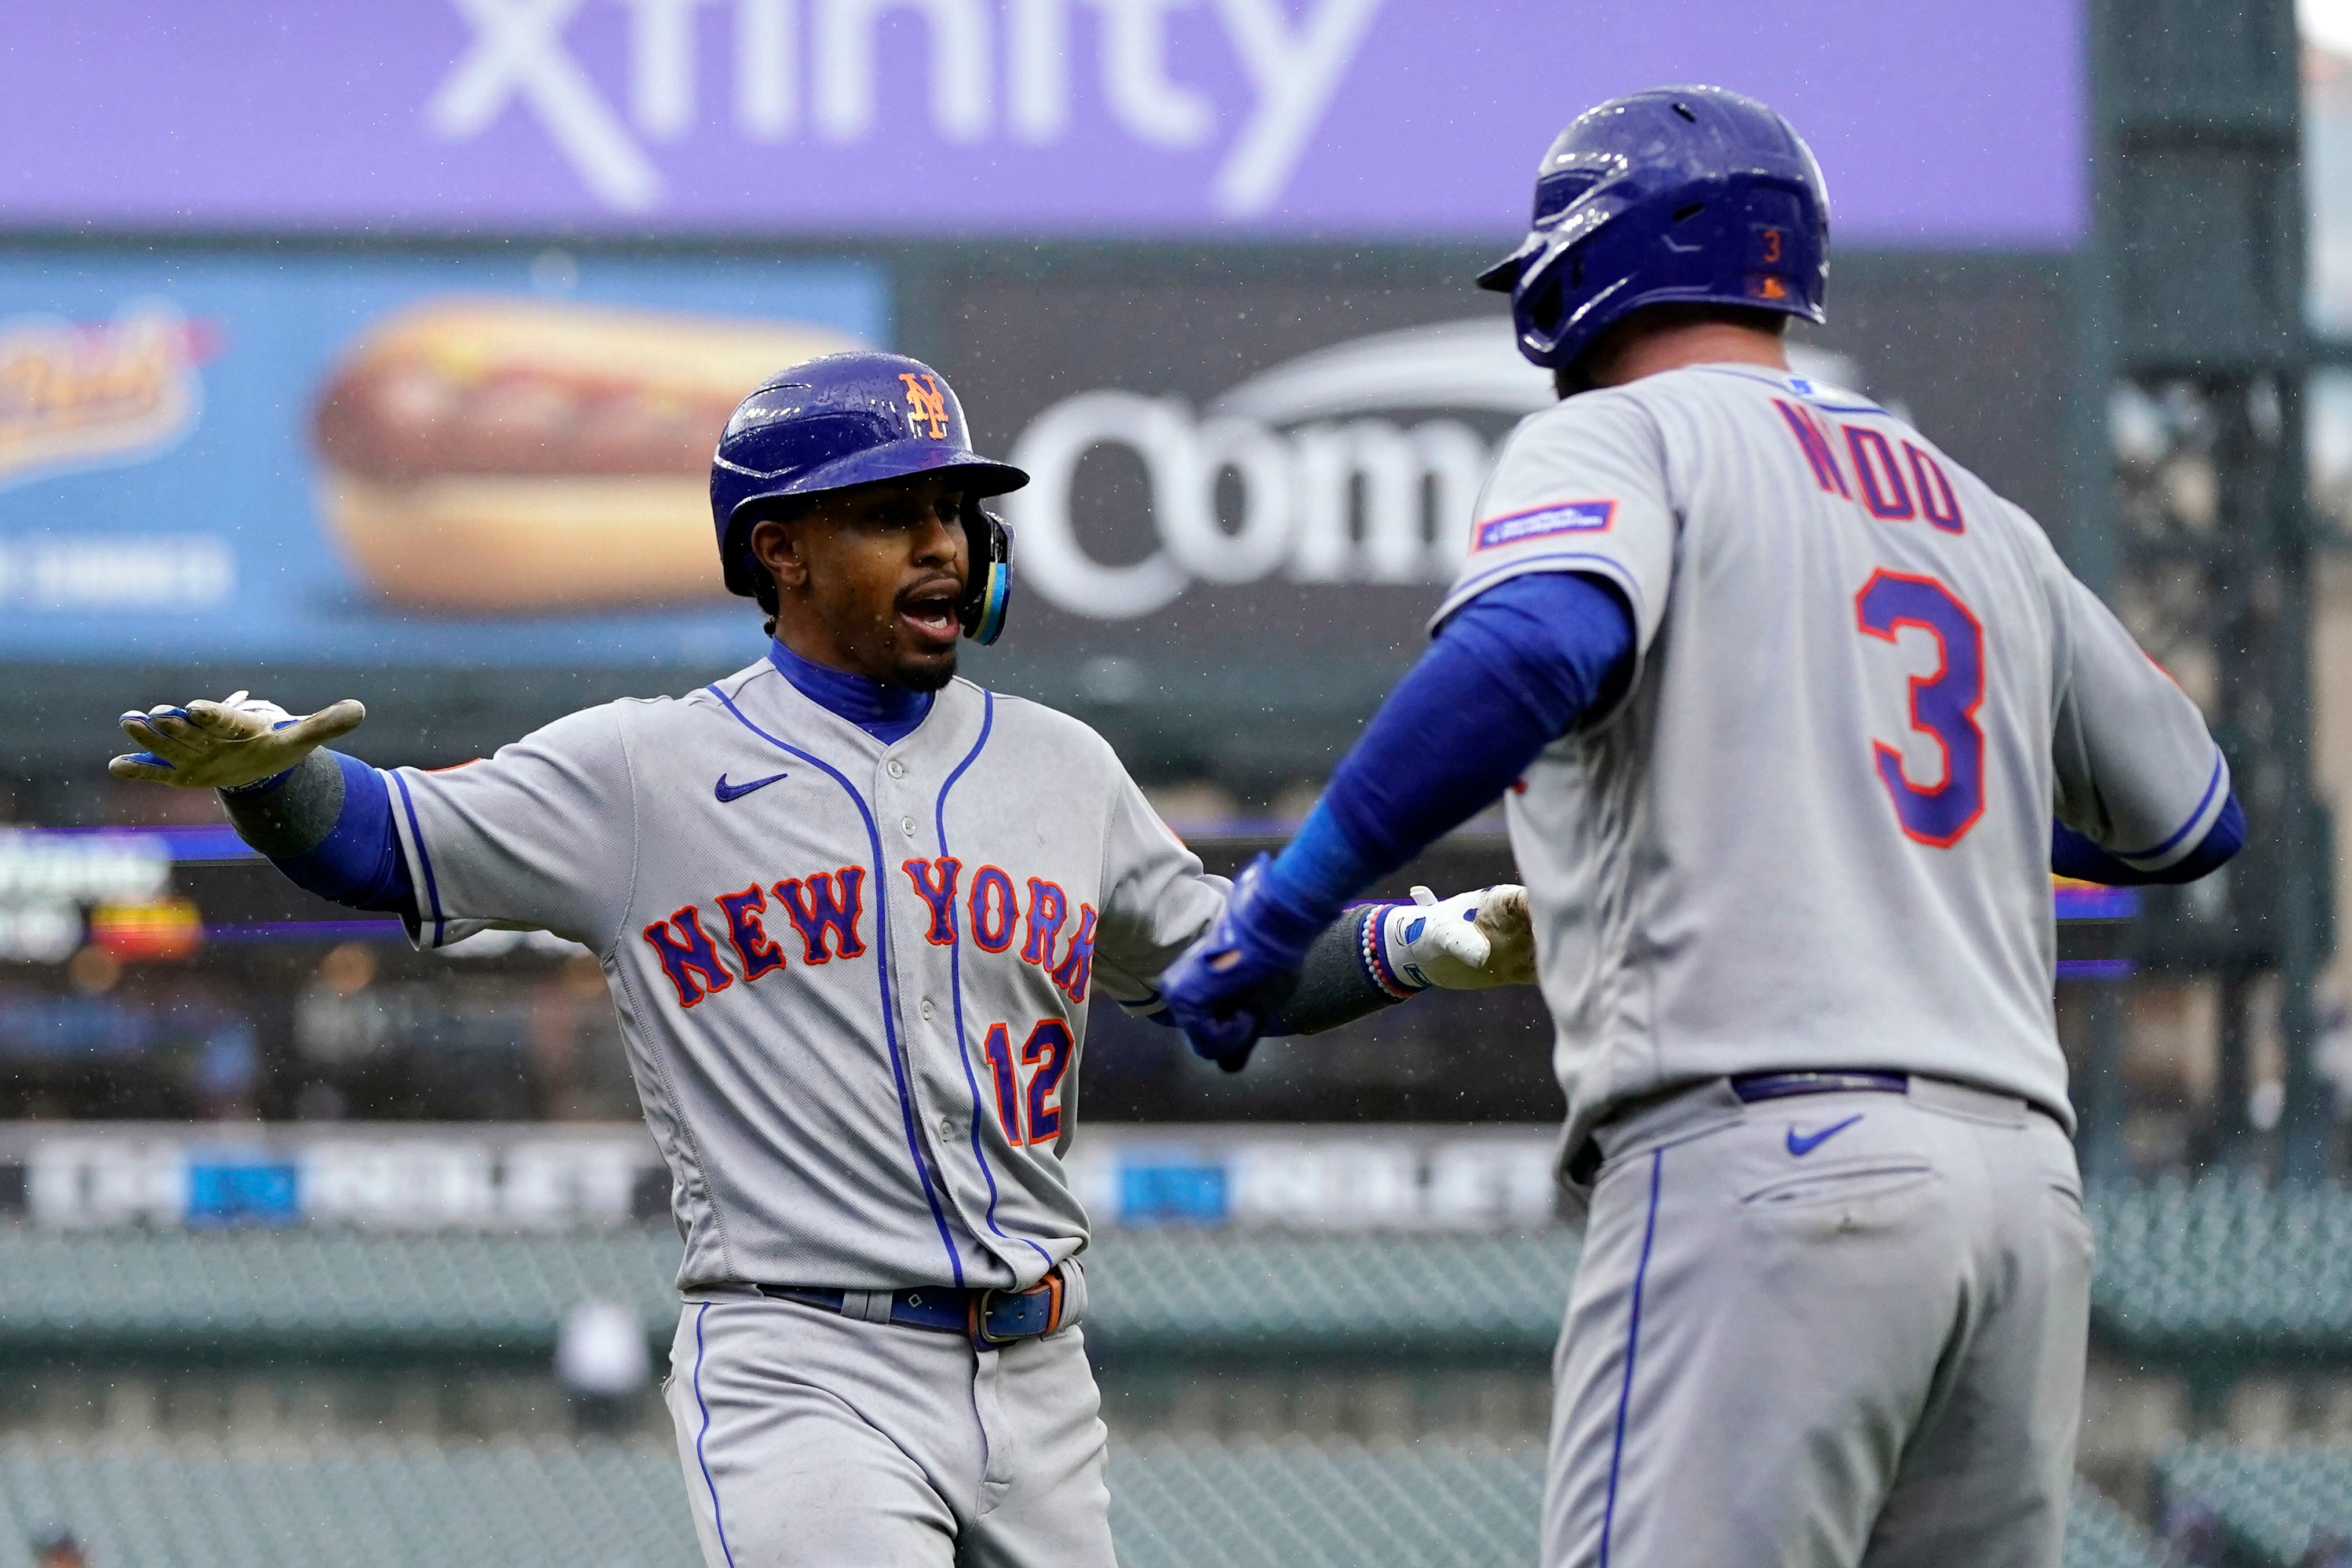 Haase's 5 RBIs lift Tigers over Mets in doubleheader opener